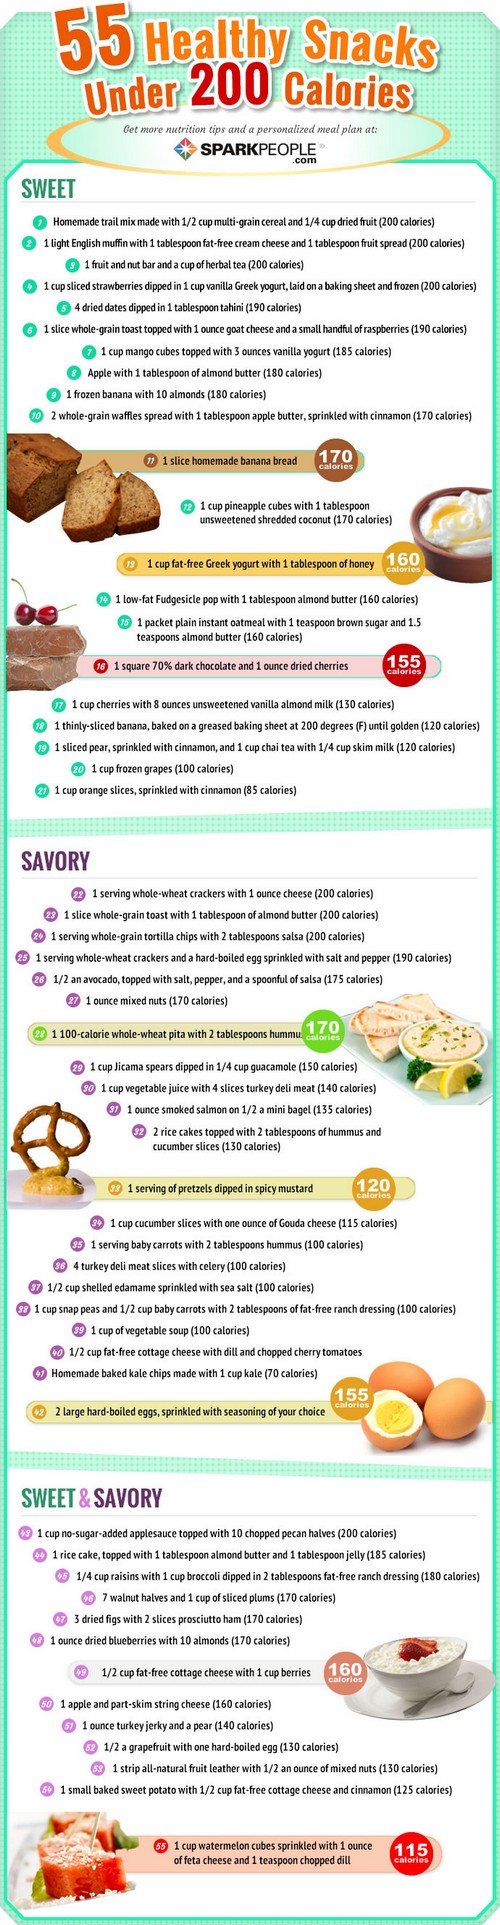 55 healthy snack ideas under 200 calories